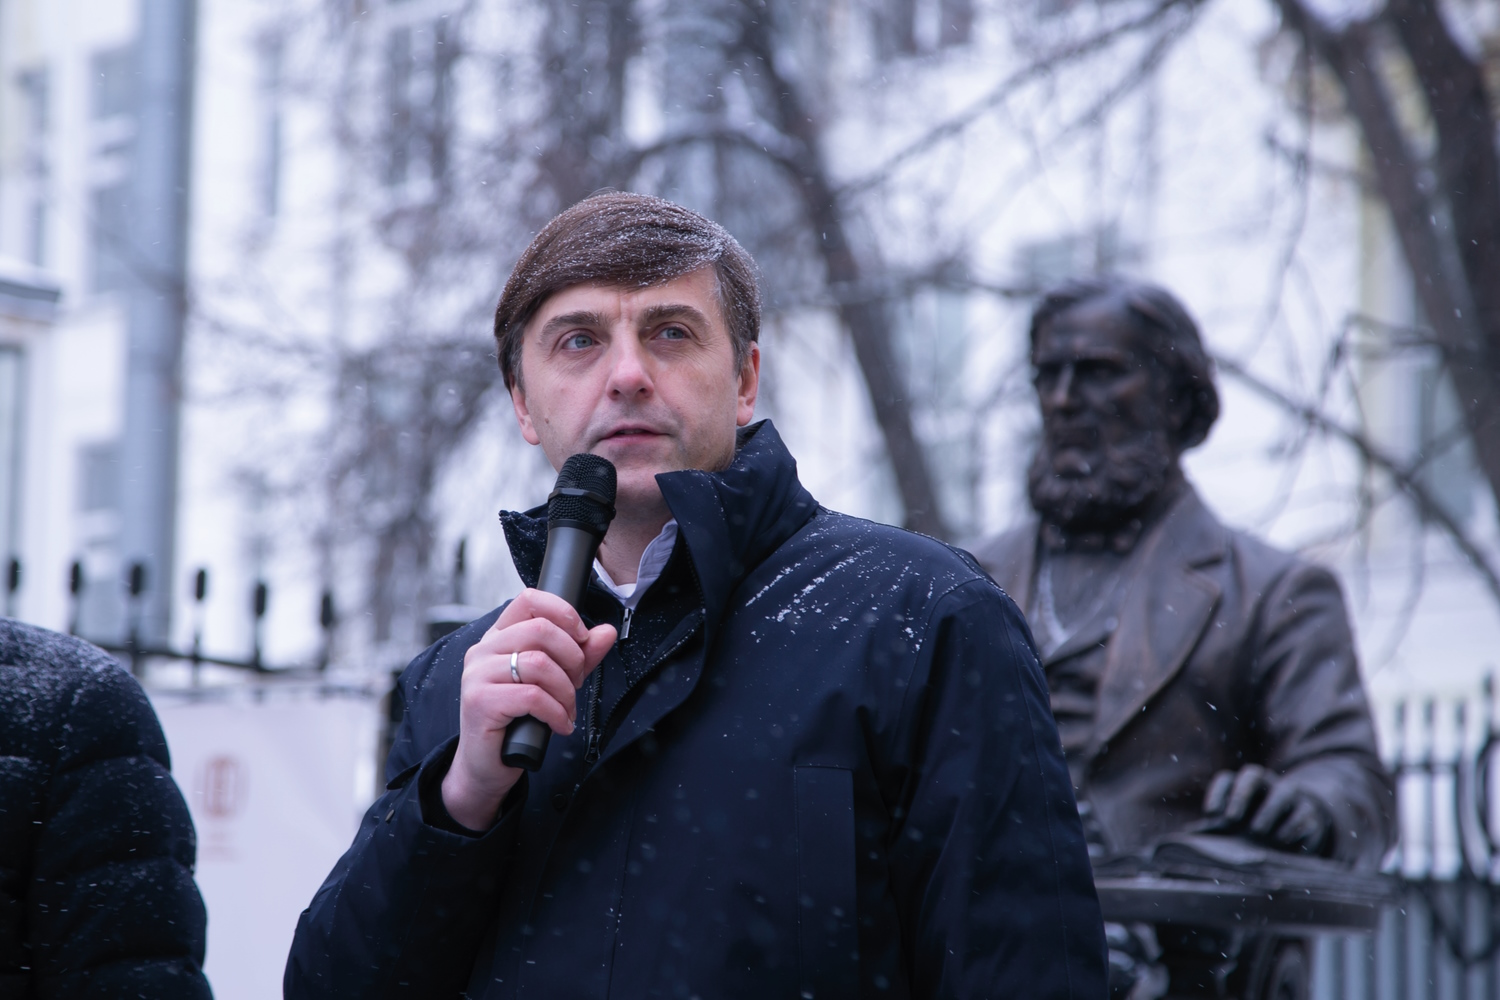 Памятник К.Д. Ушинскому установили возле здания МПГУ в честь 200-летия великого педагога